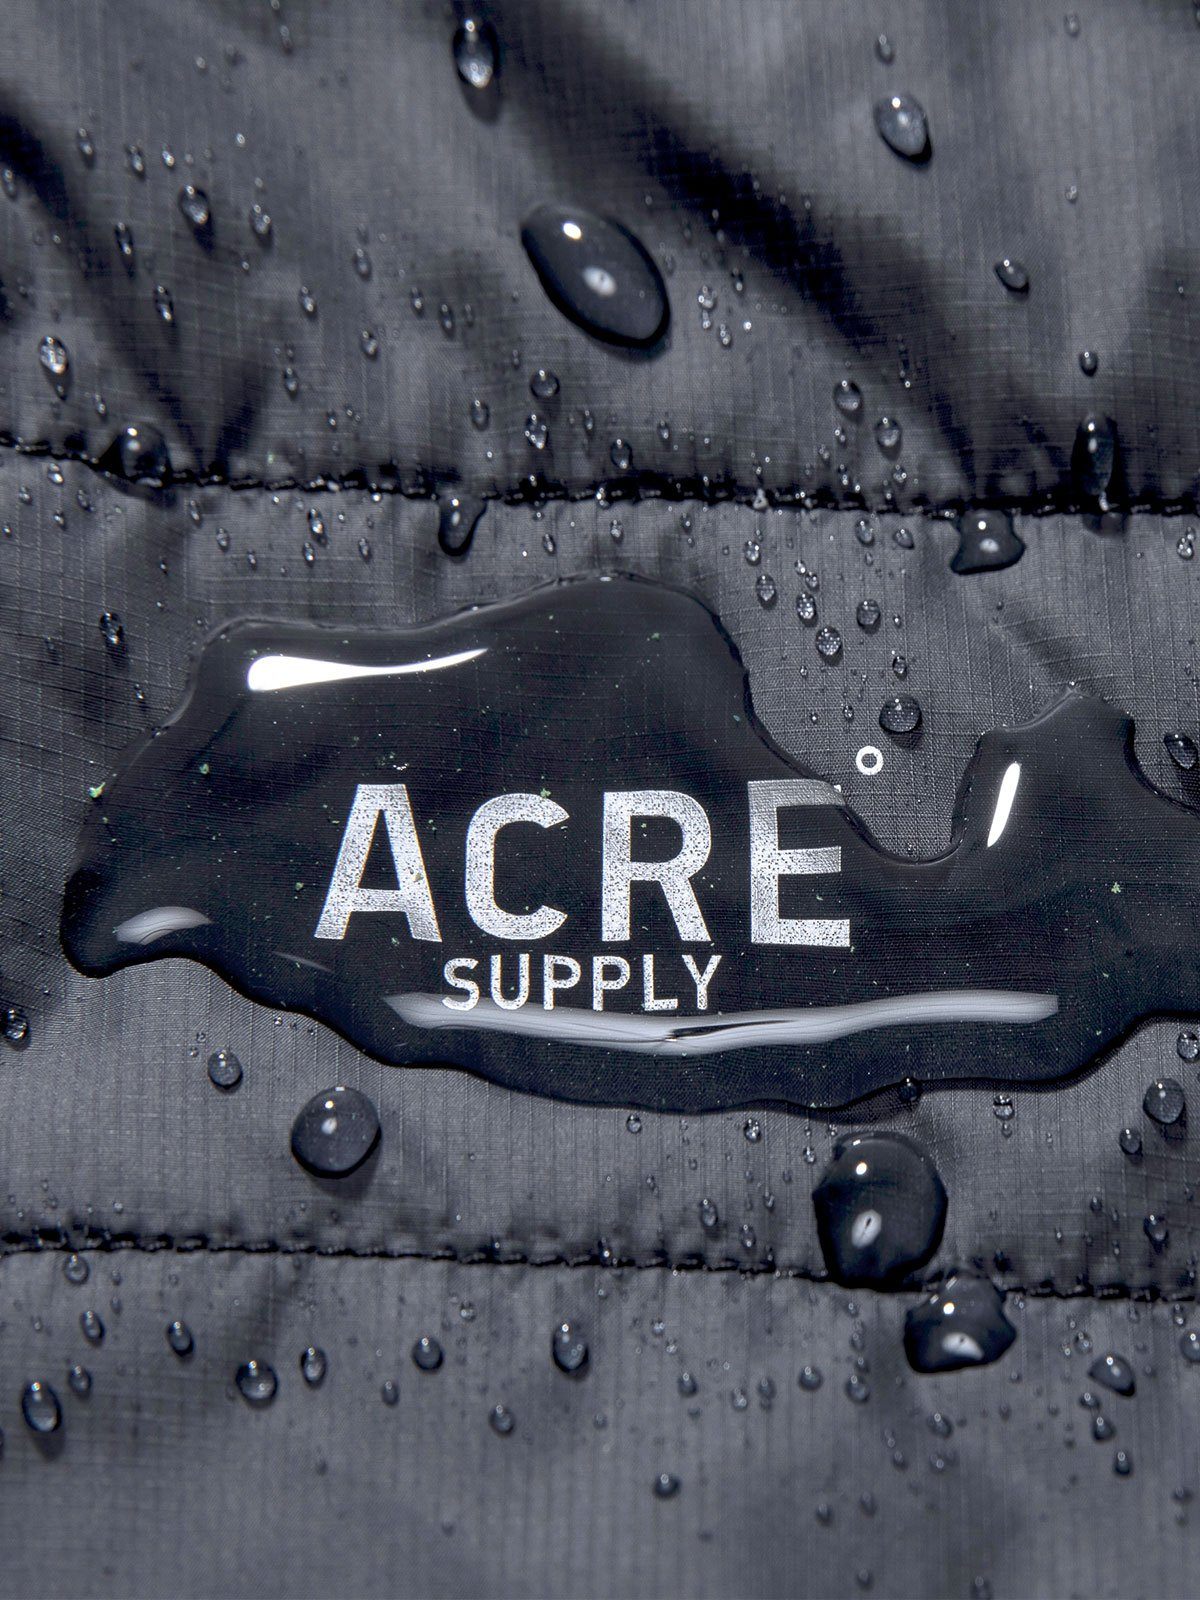 Acre Series Vest by Mission Workshop - Bolsas impermeables y ropa técnica - San Francisco y Los Angeles - Construido para durar - Garantizado para siempre